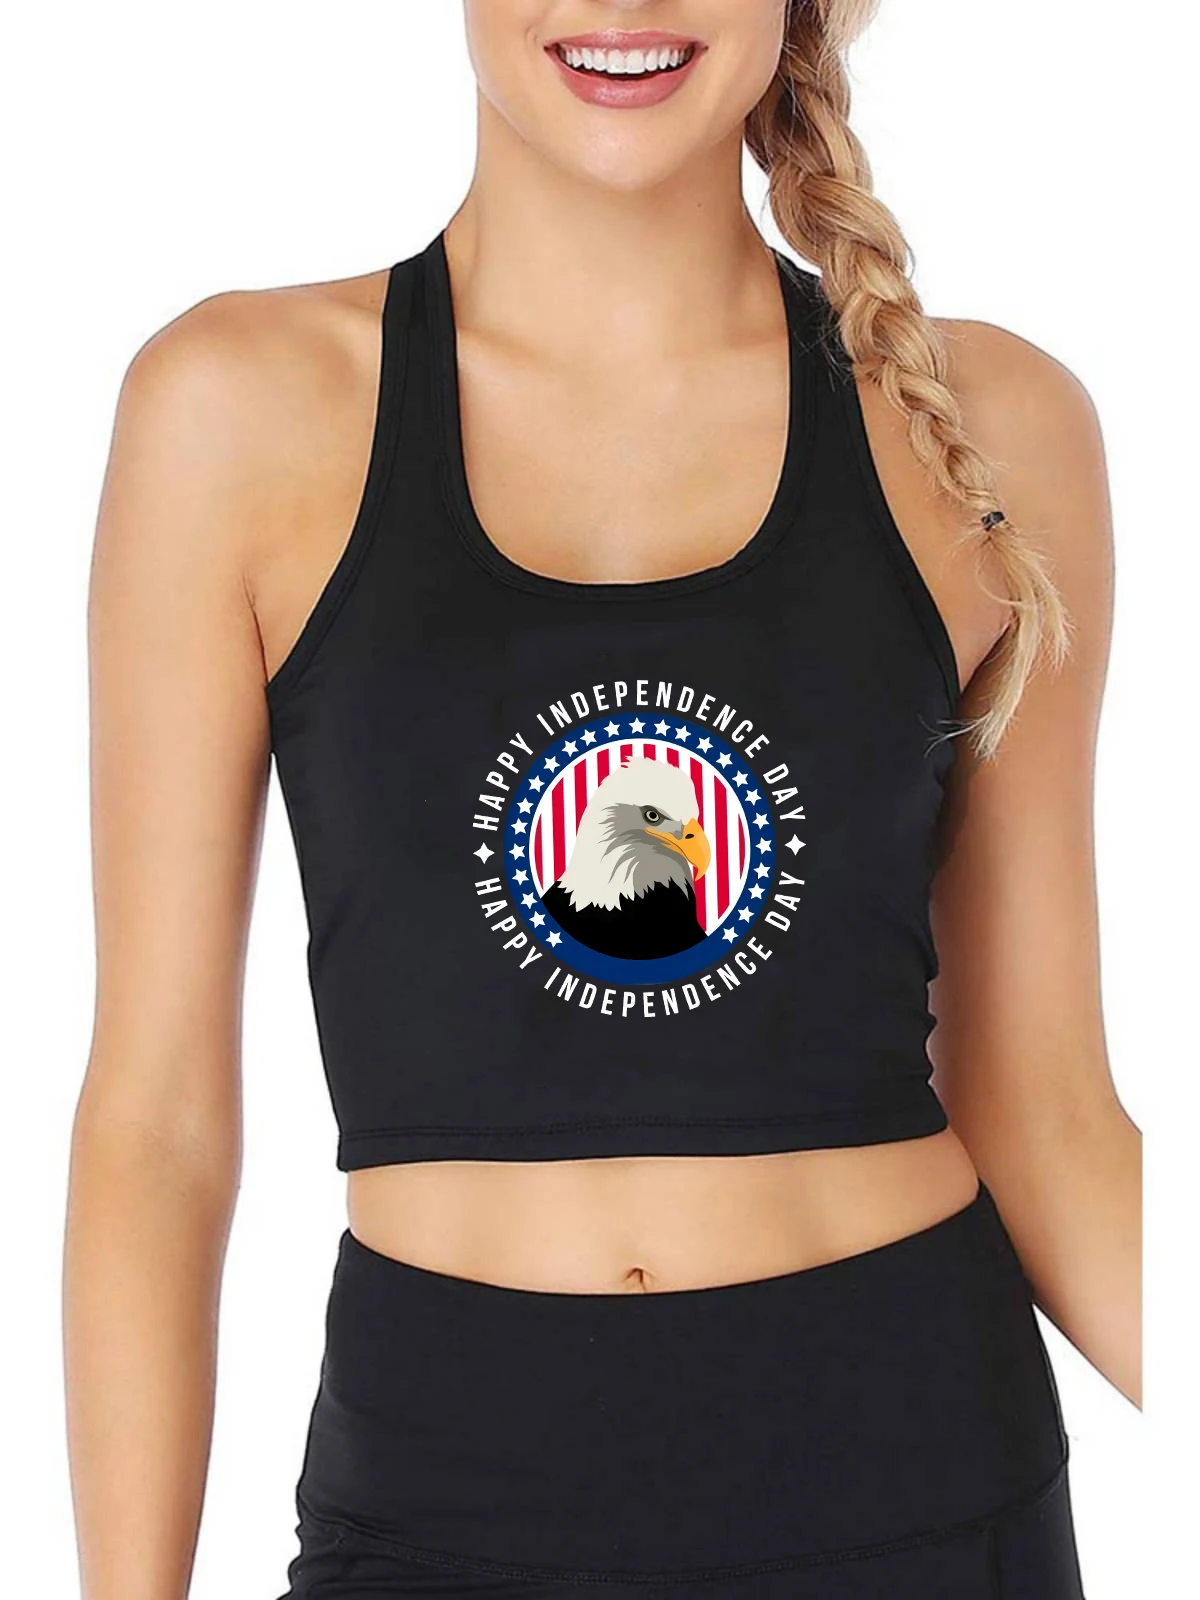 

Дизайн Счастливого Дня независимости, сексуальные дышащие майки, женский личный трендовый укороченный топ, тренировочная футболка для фит...